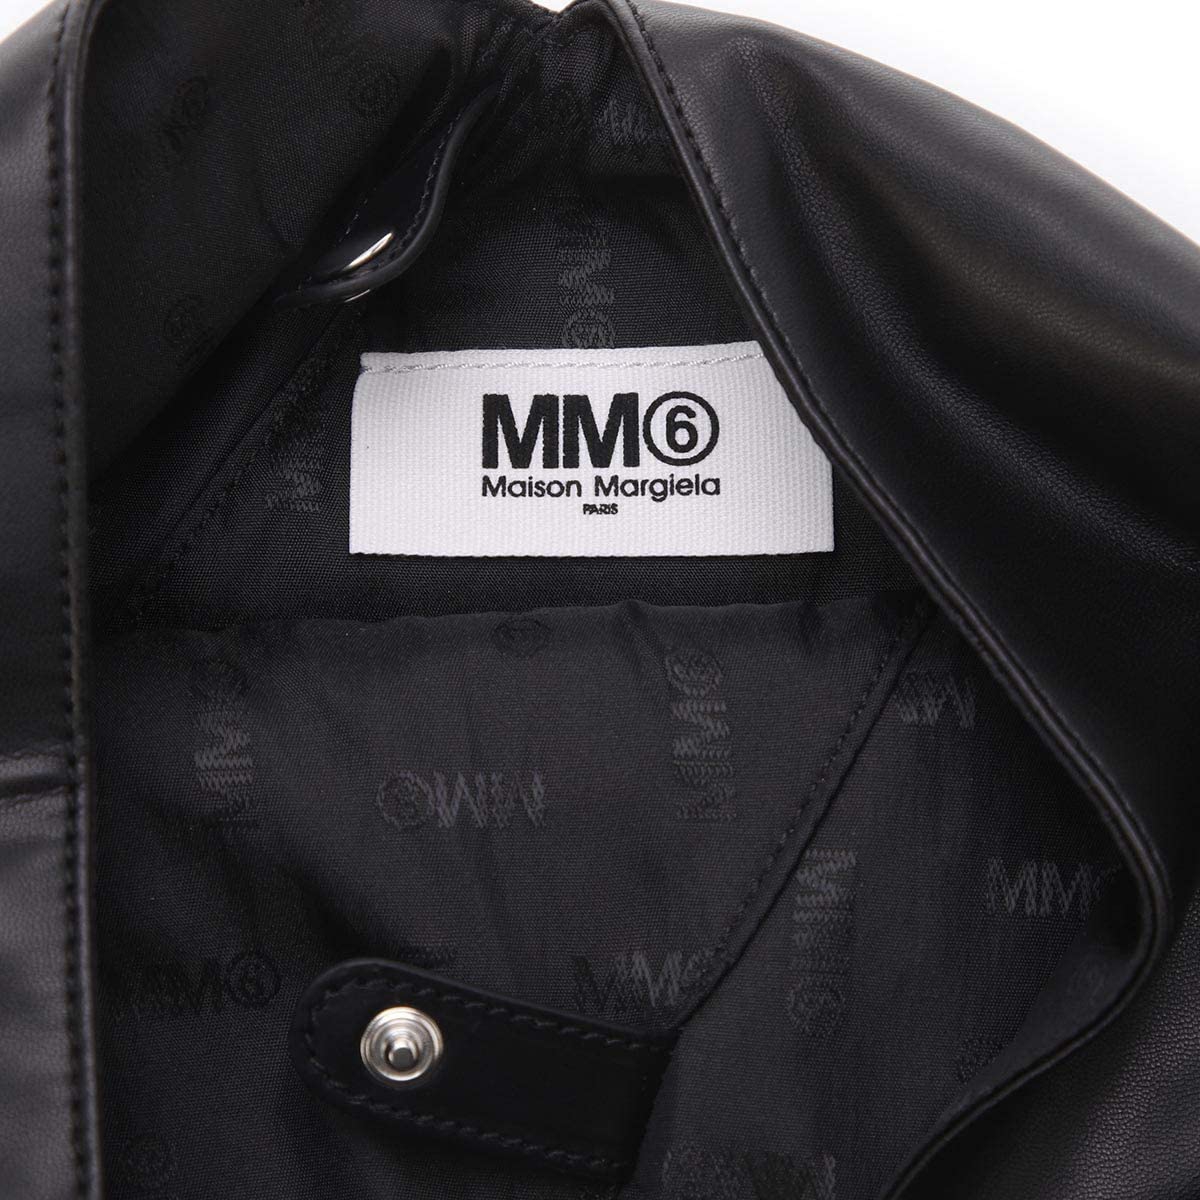 MM6(エムエム6) Japanese スモール フェイクレザー バッグの商品画像9 